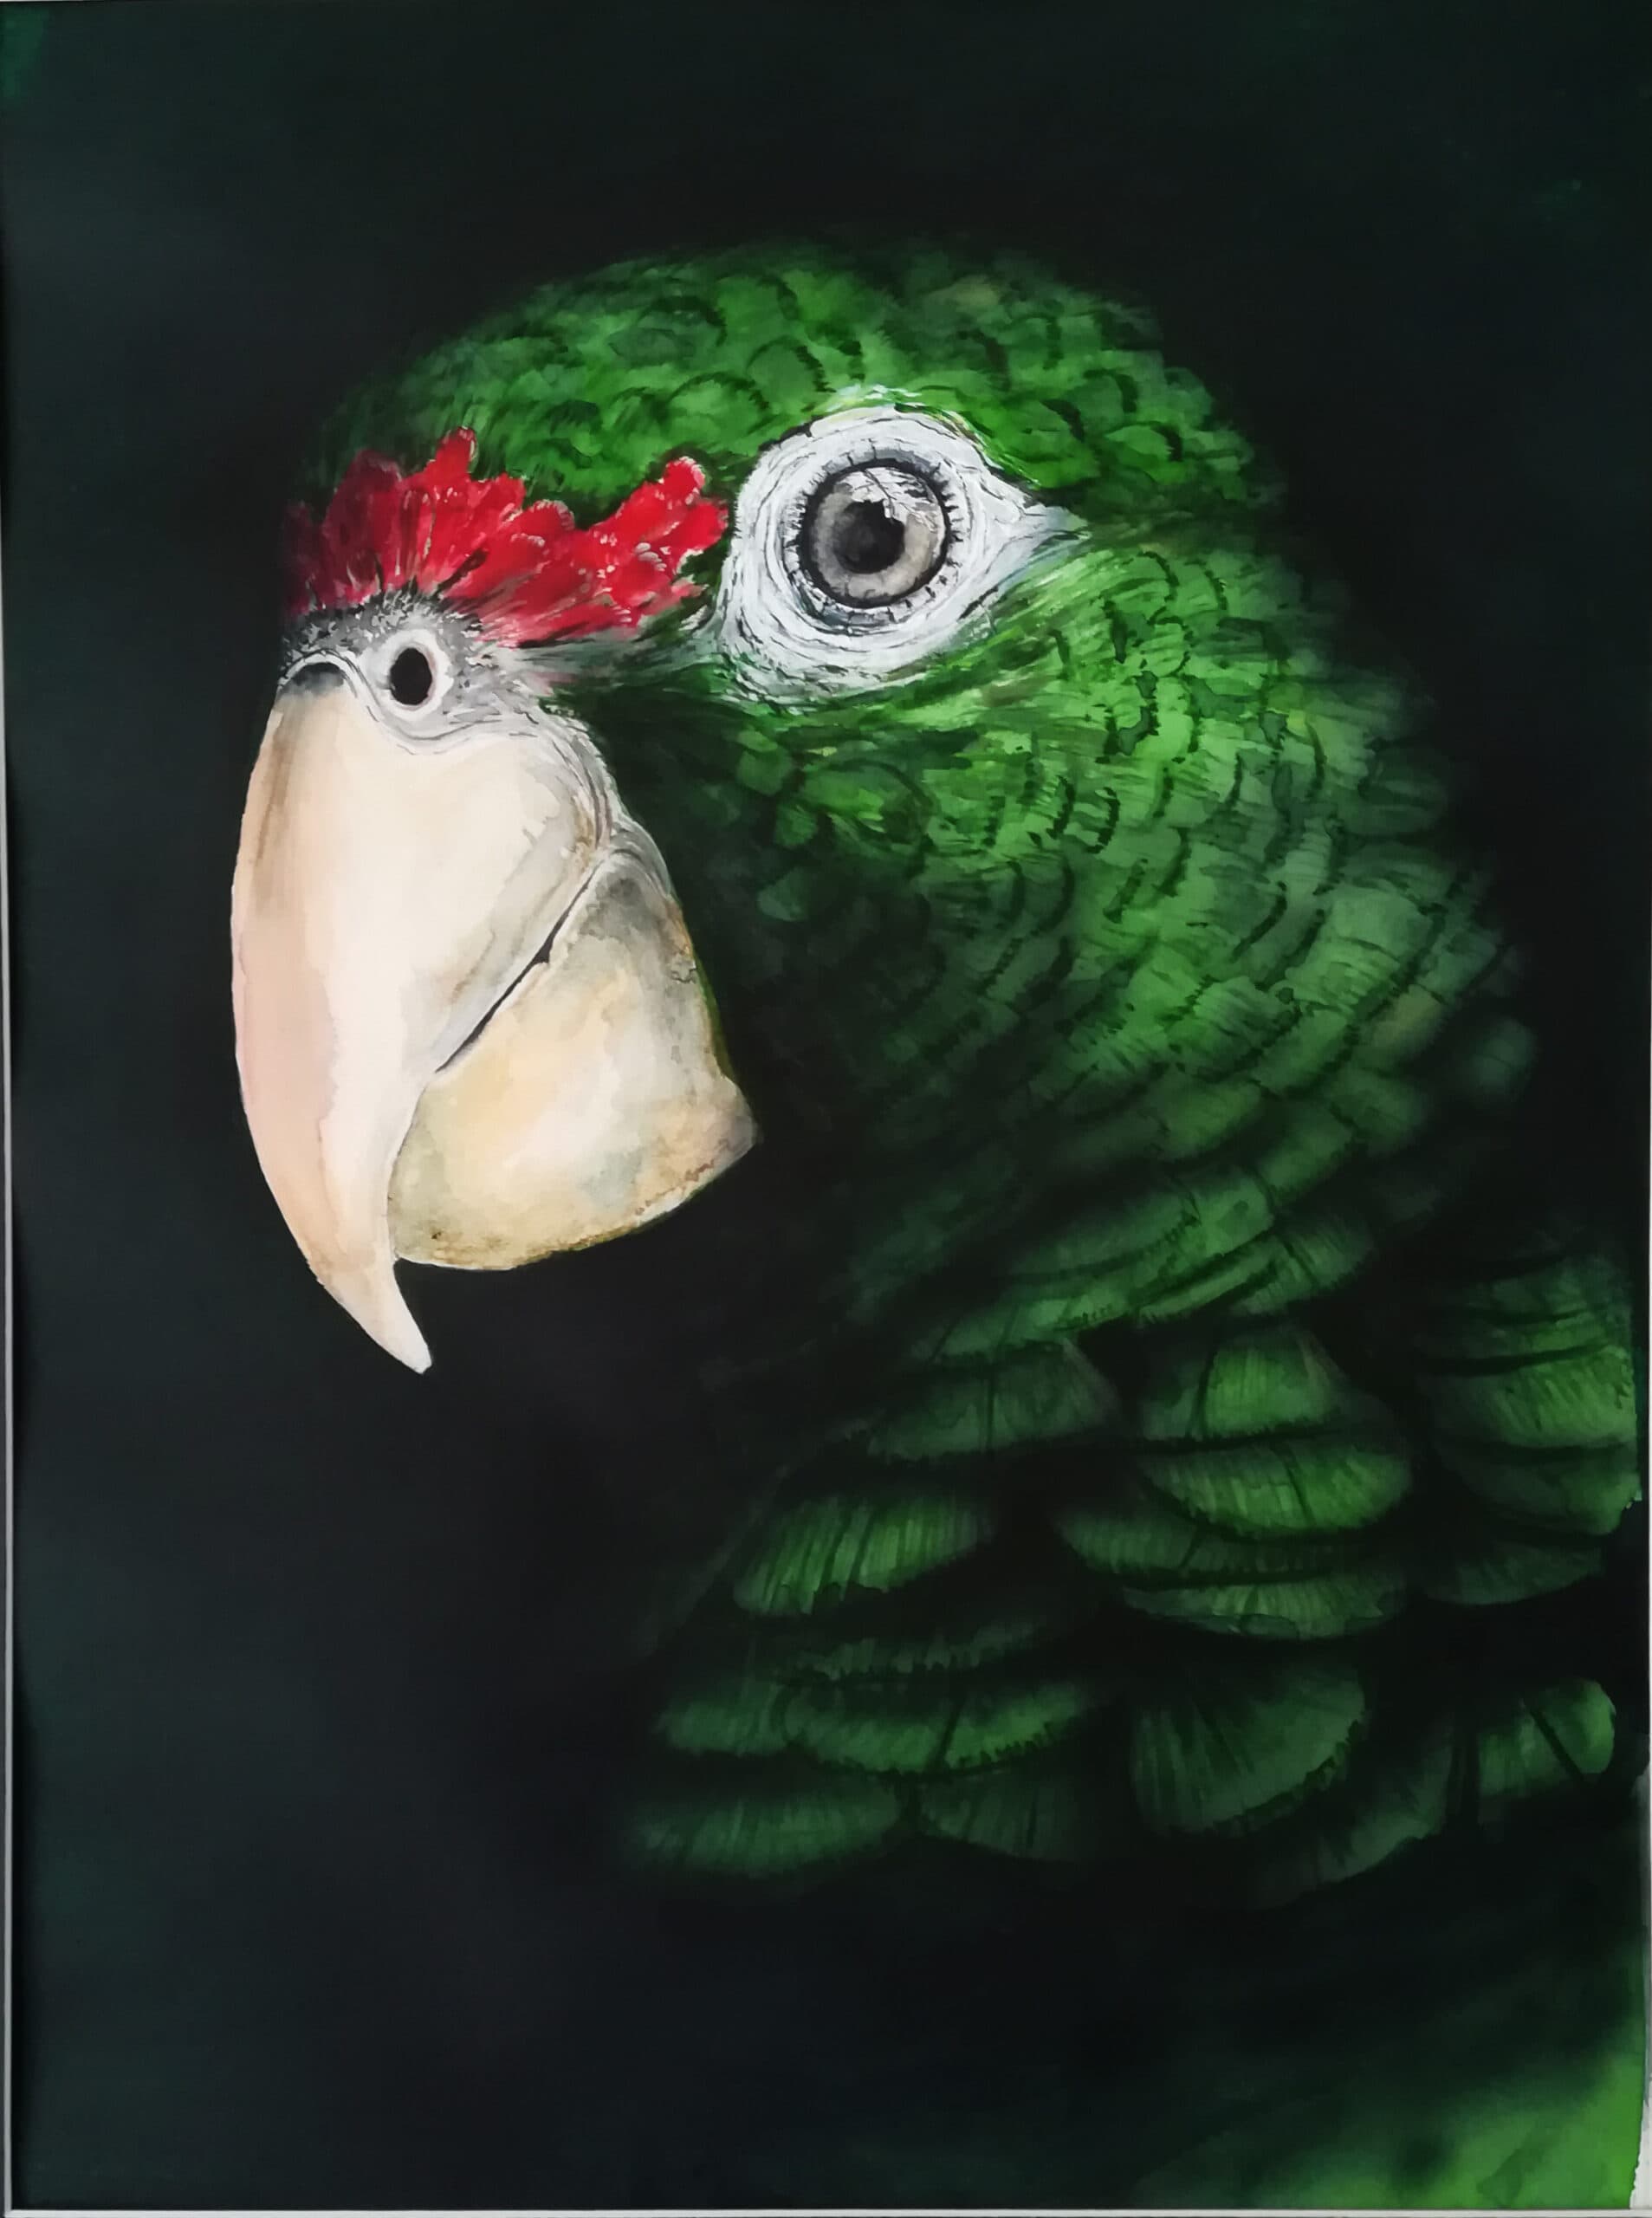 œuvre d'art, animalier, acrylique papier A3, david morel artiste, portrait d'oiseau vert sur fond noir